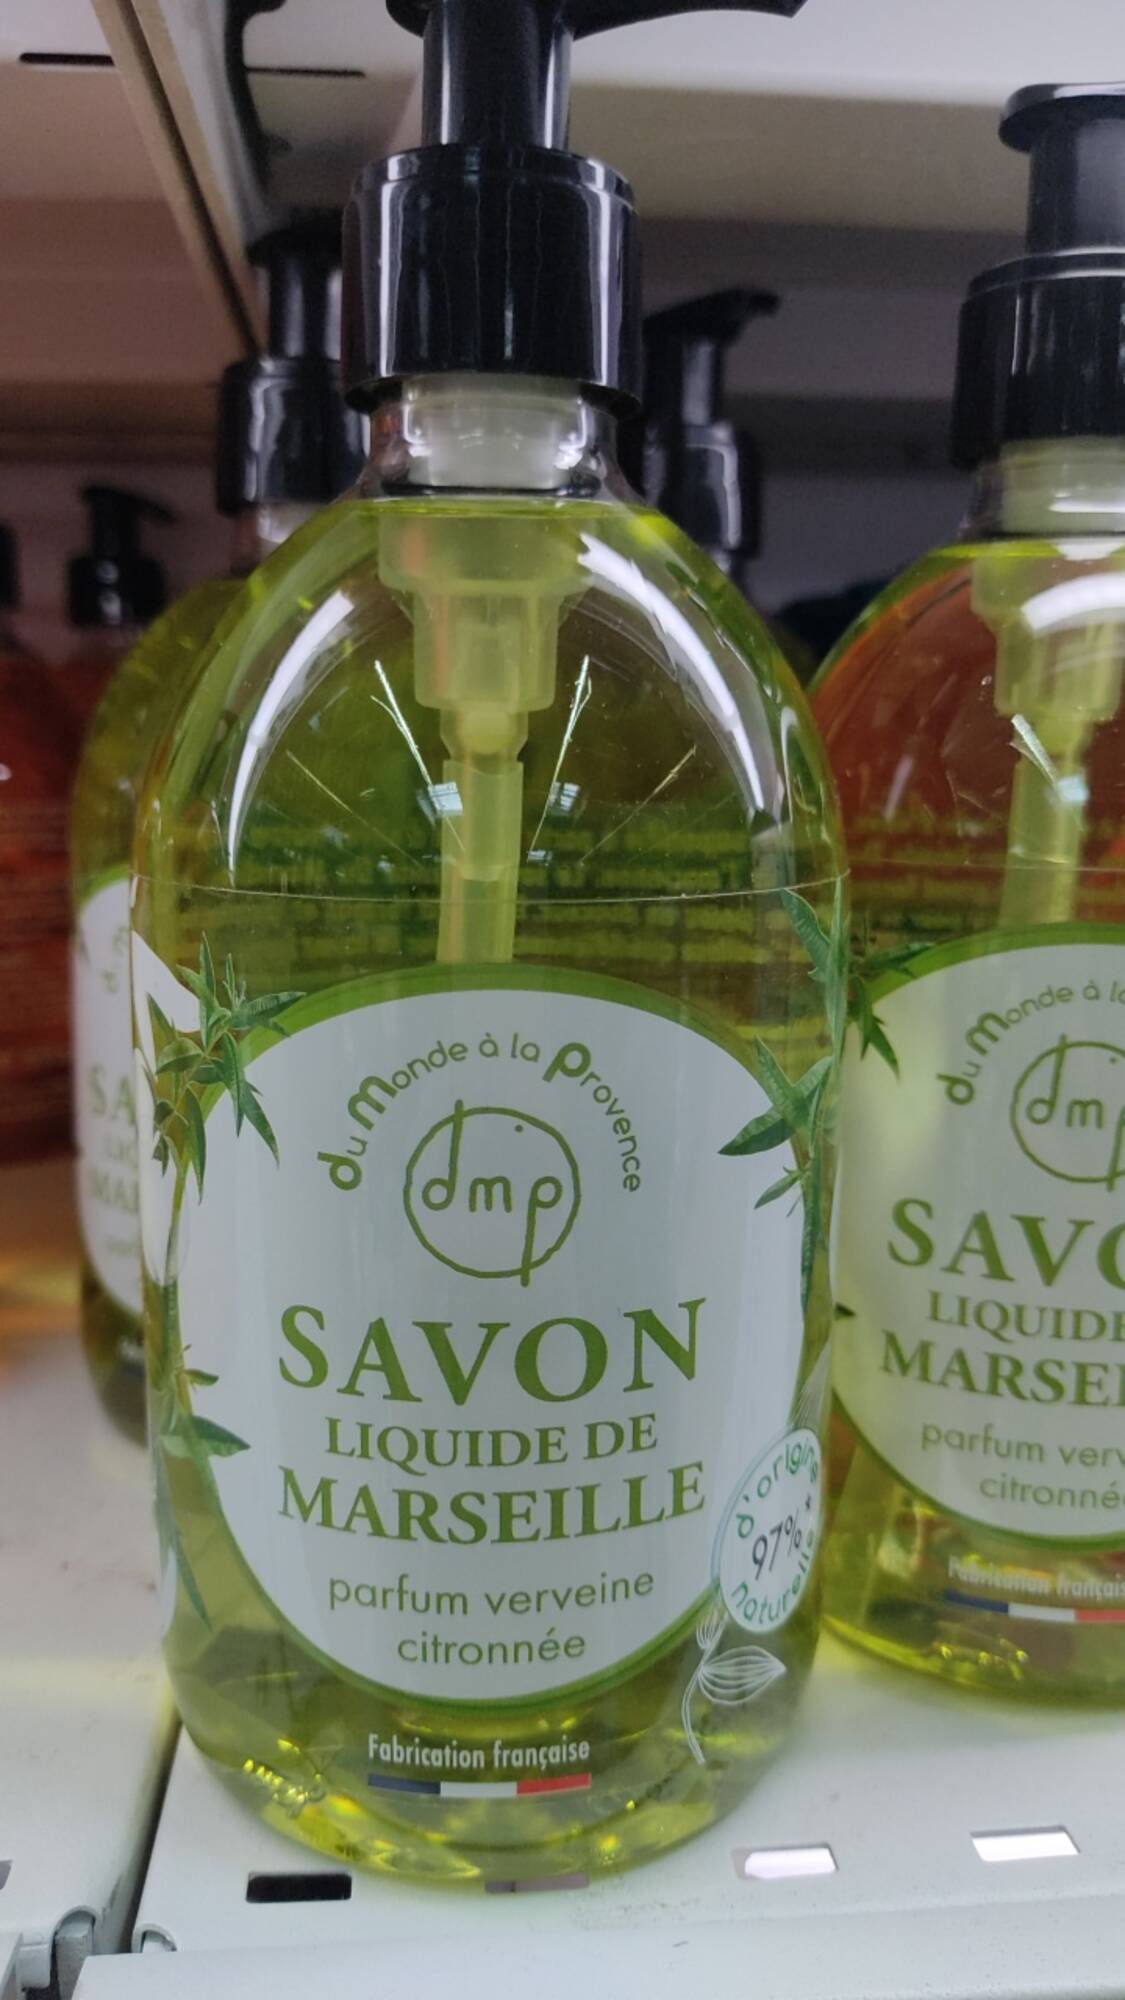 DU MONDE À LA PROVENCE - Parfum verveine citronnée - Savon liquide de Marseille